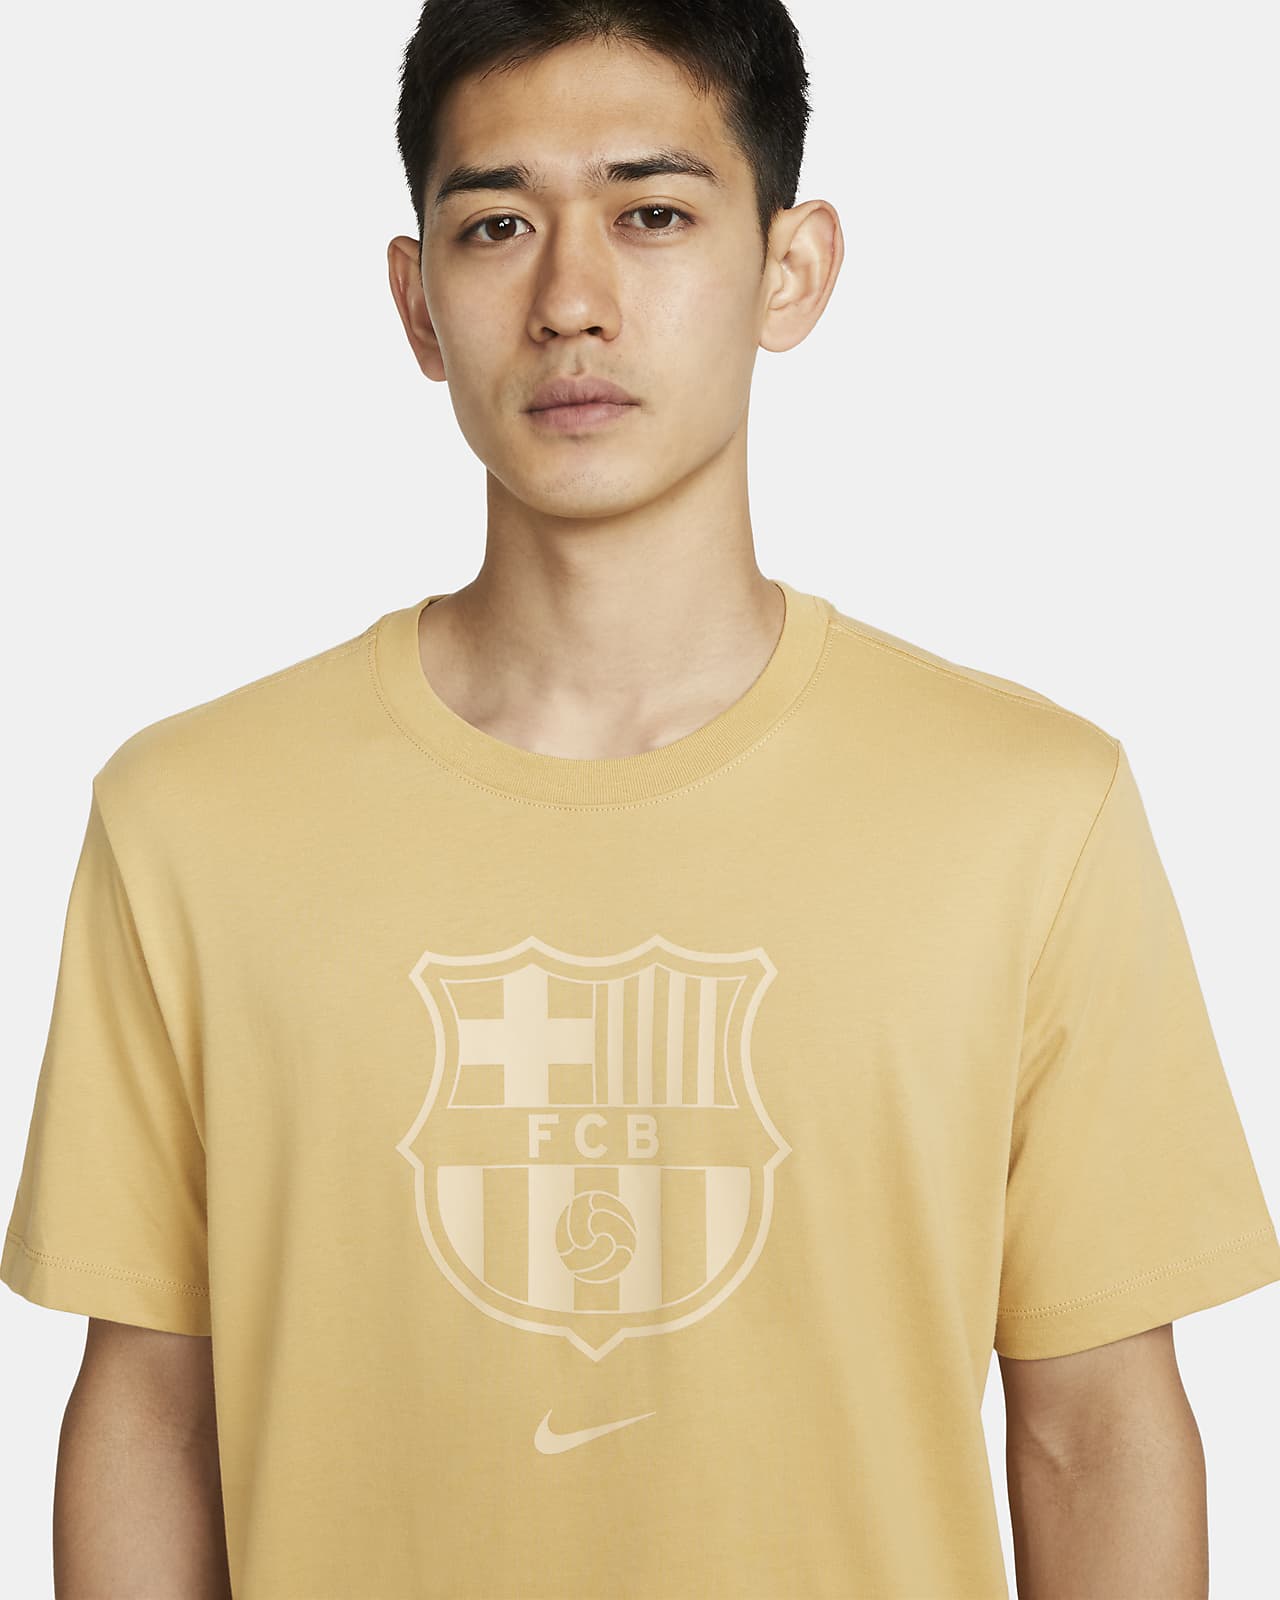 FC バルセロナ クレスト メンズ サッカー Tシャツ